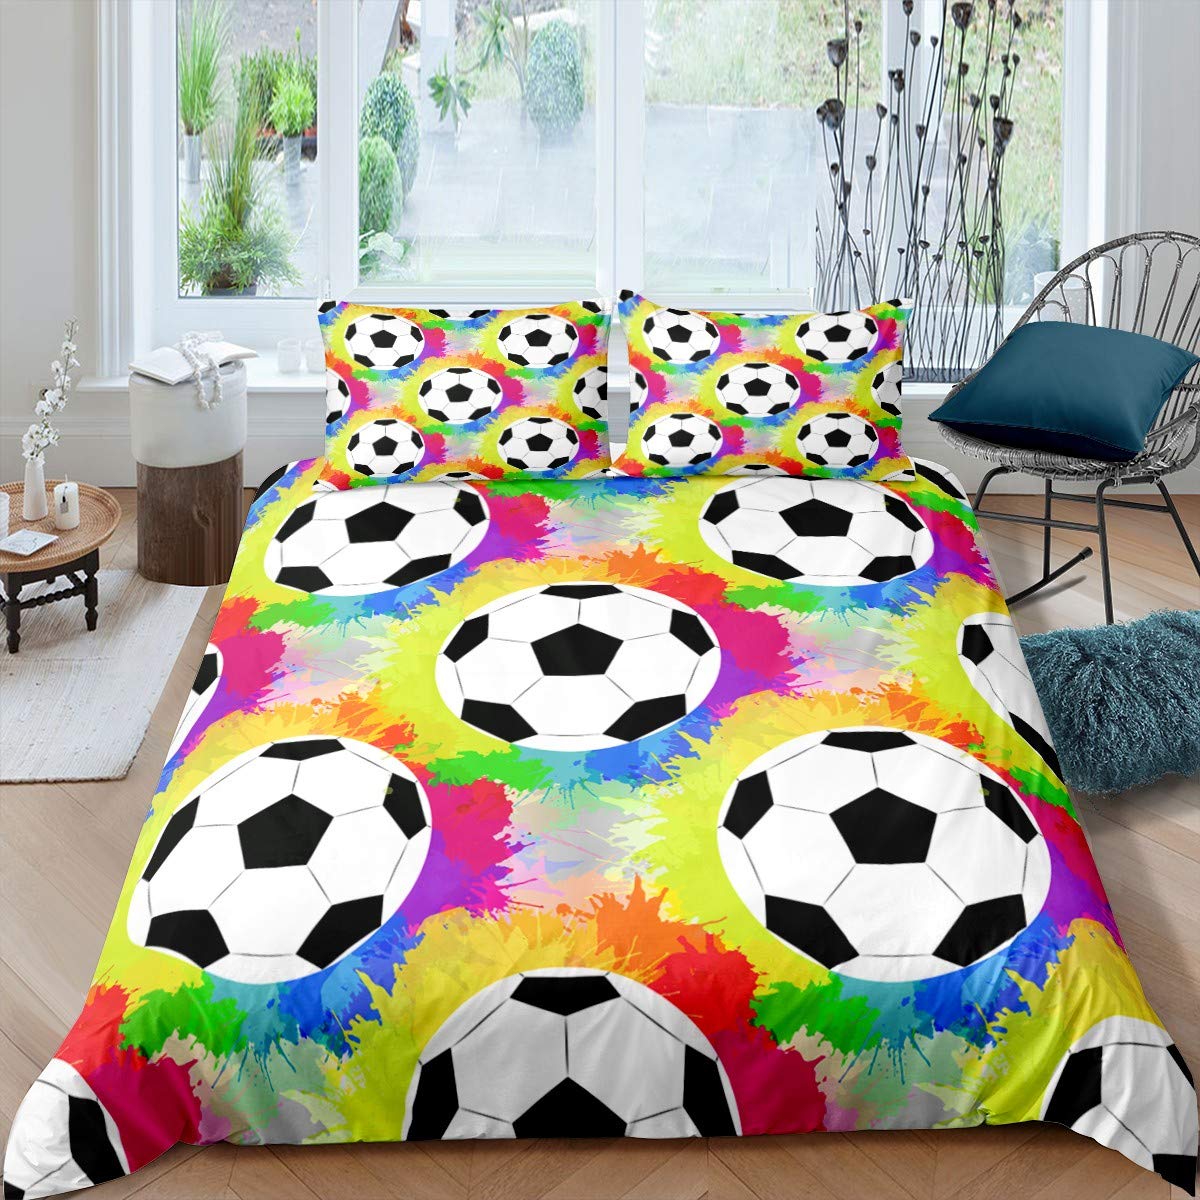 サッカー羽毛布団カバーセットサッカーボールパターンスポーツテーマの寝具セットマイクロファイバーカラフルなグランジスタイルダブルキングキルトカバー